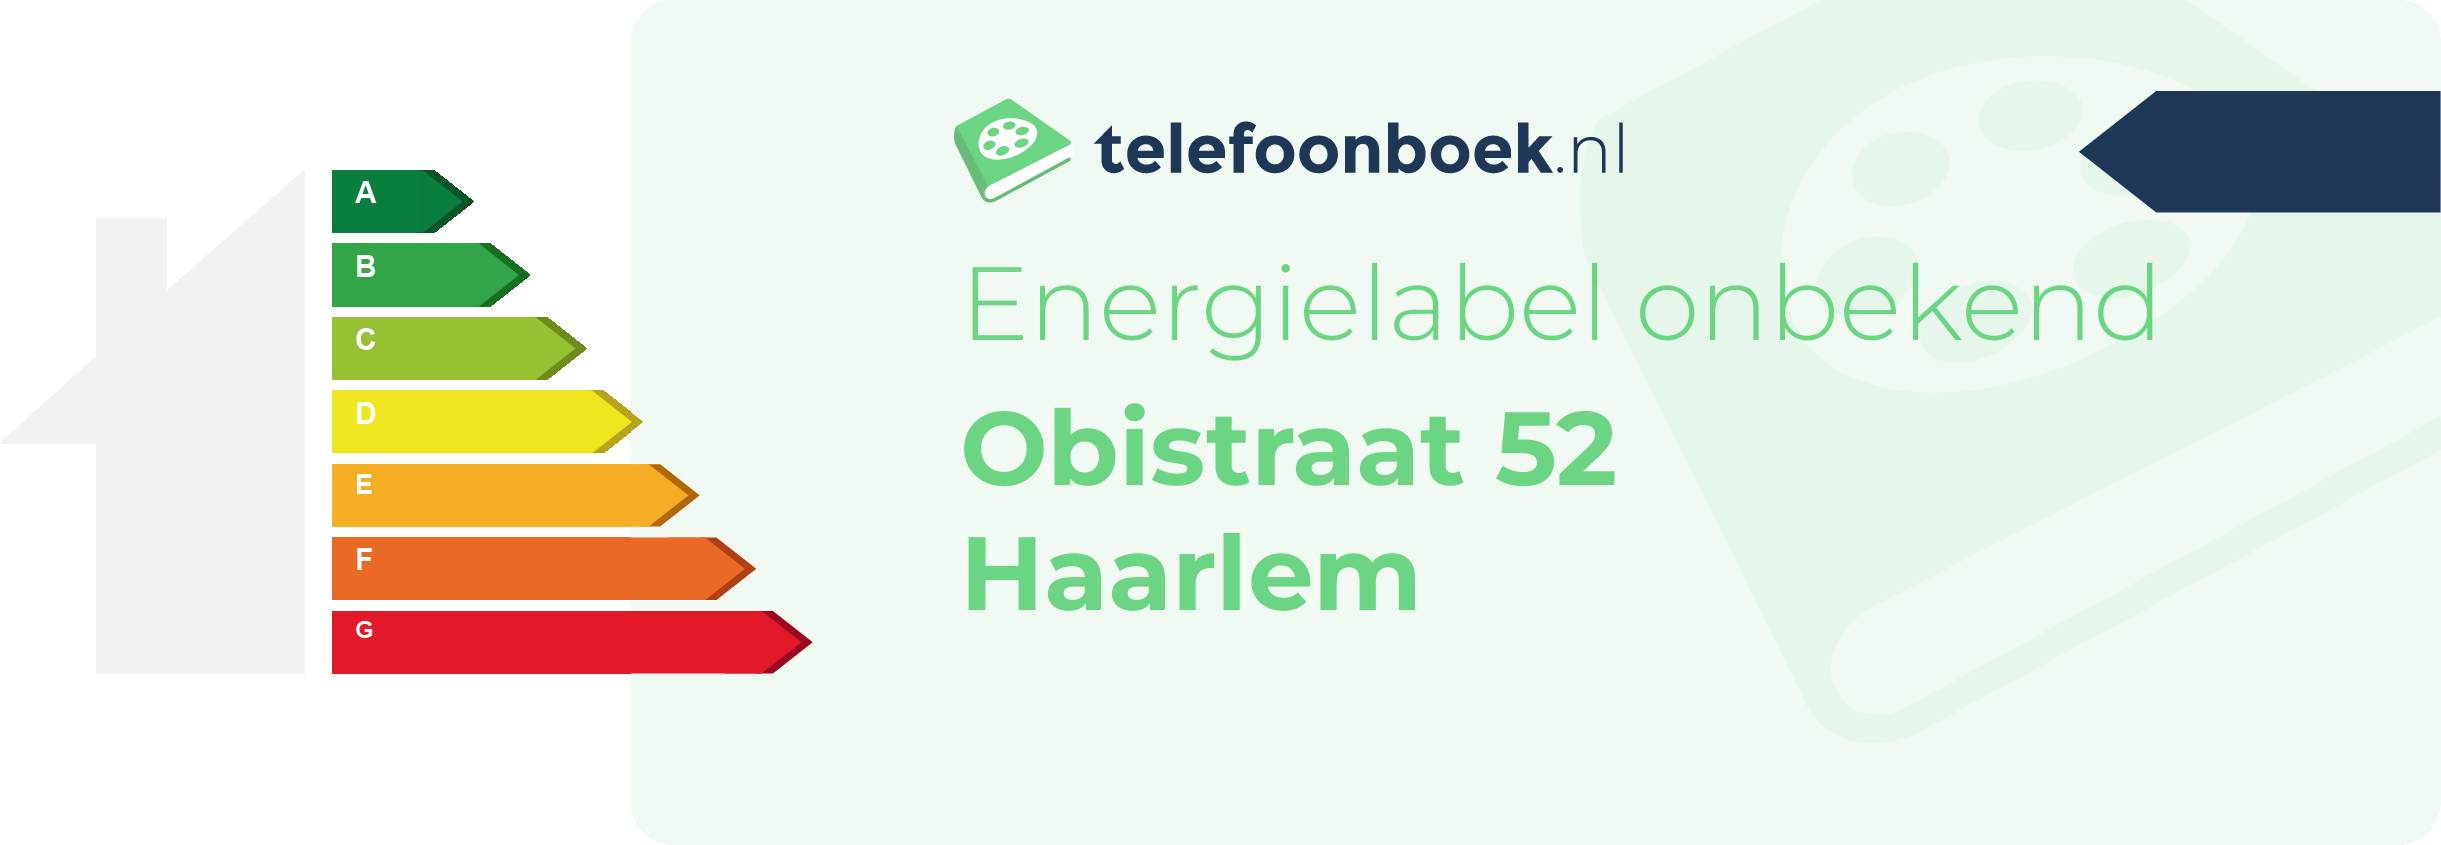 Energielabel Obistraat 52 Haarlem